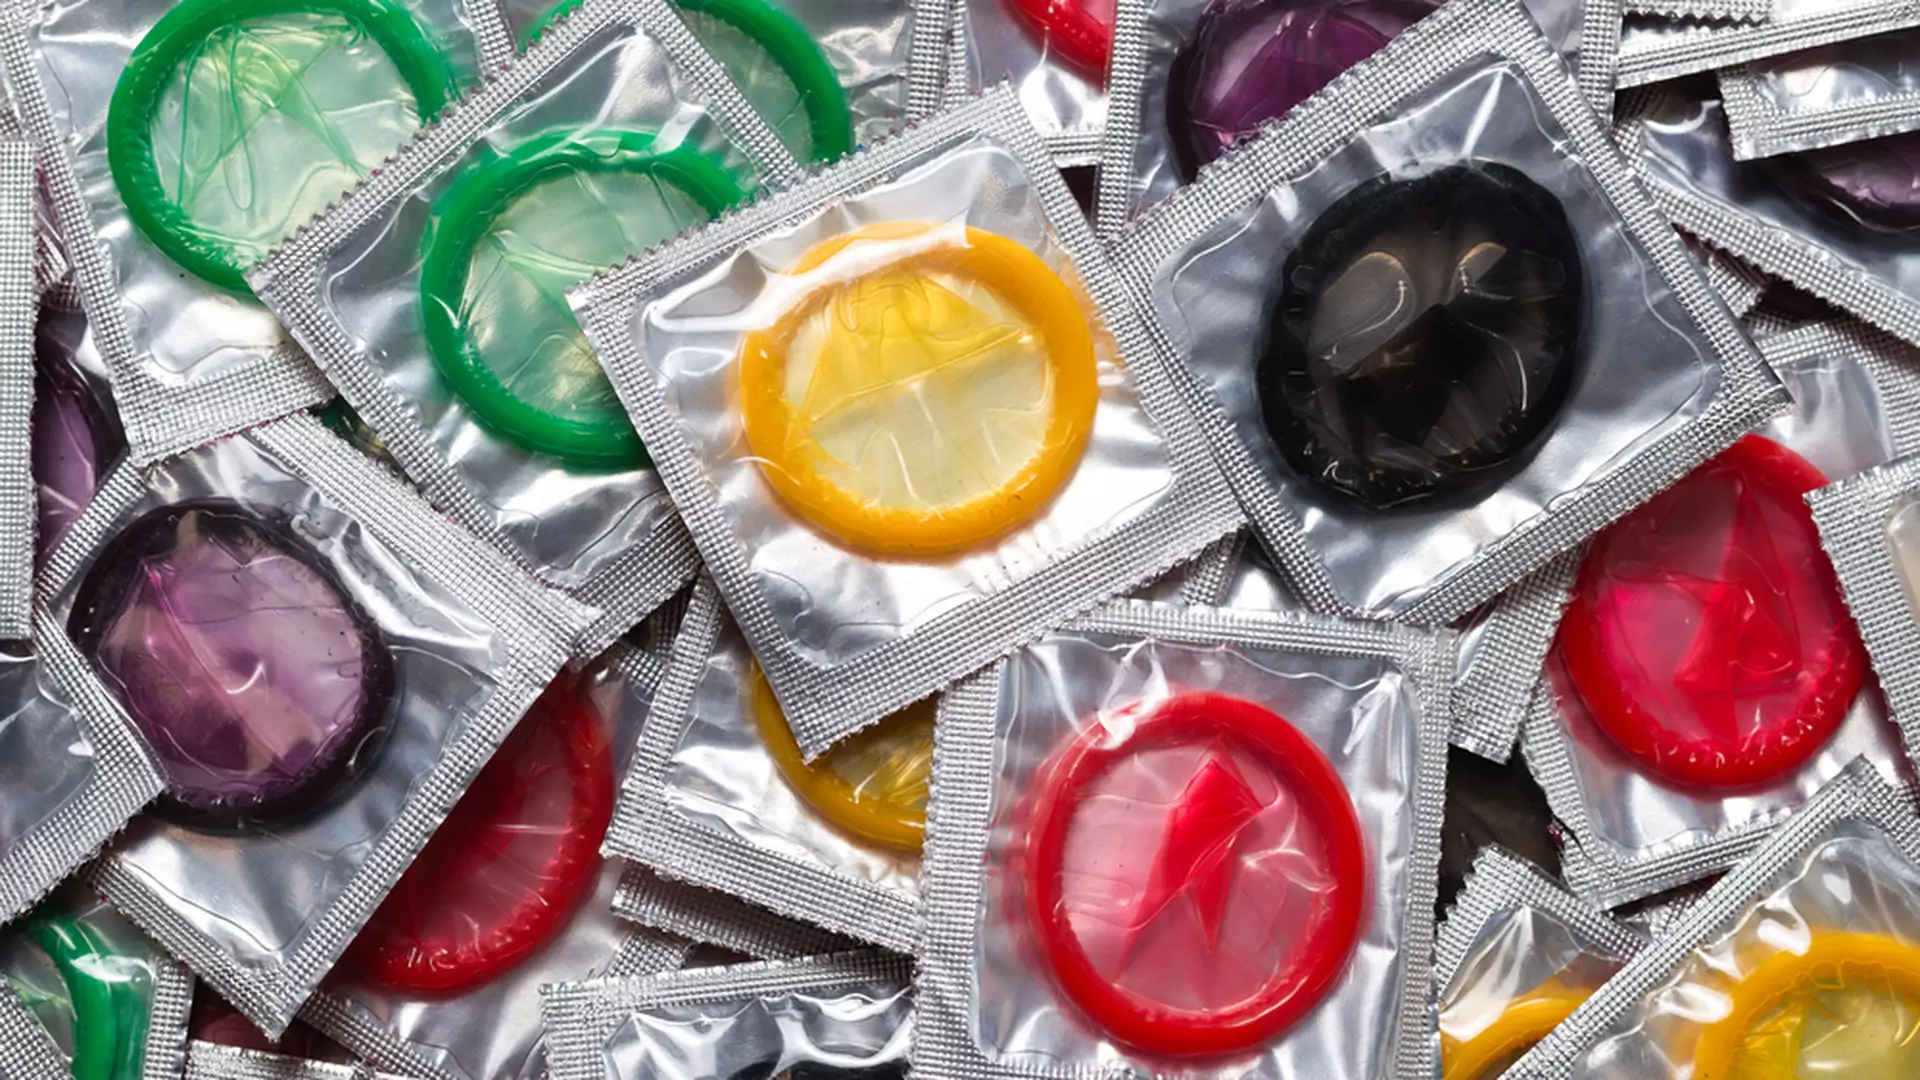 Brakuje kondomów, a rząd rozkłada ręce. "Musimy myć prezerwatywy przed ponownym użyciem"